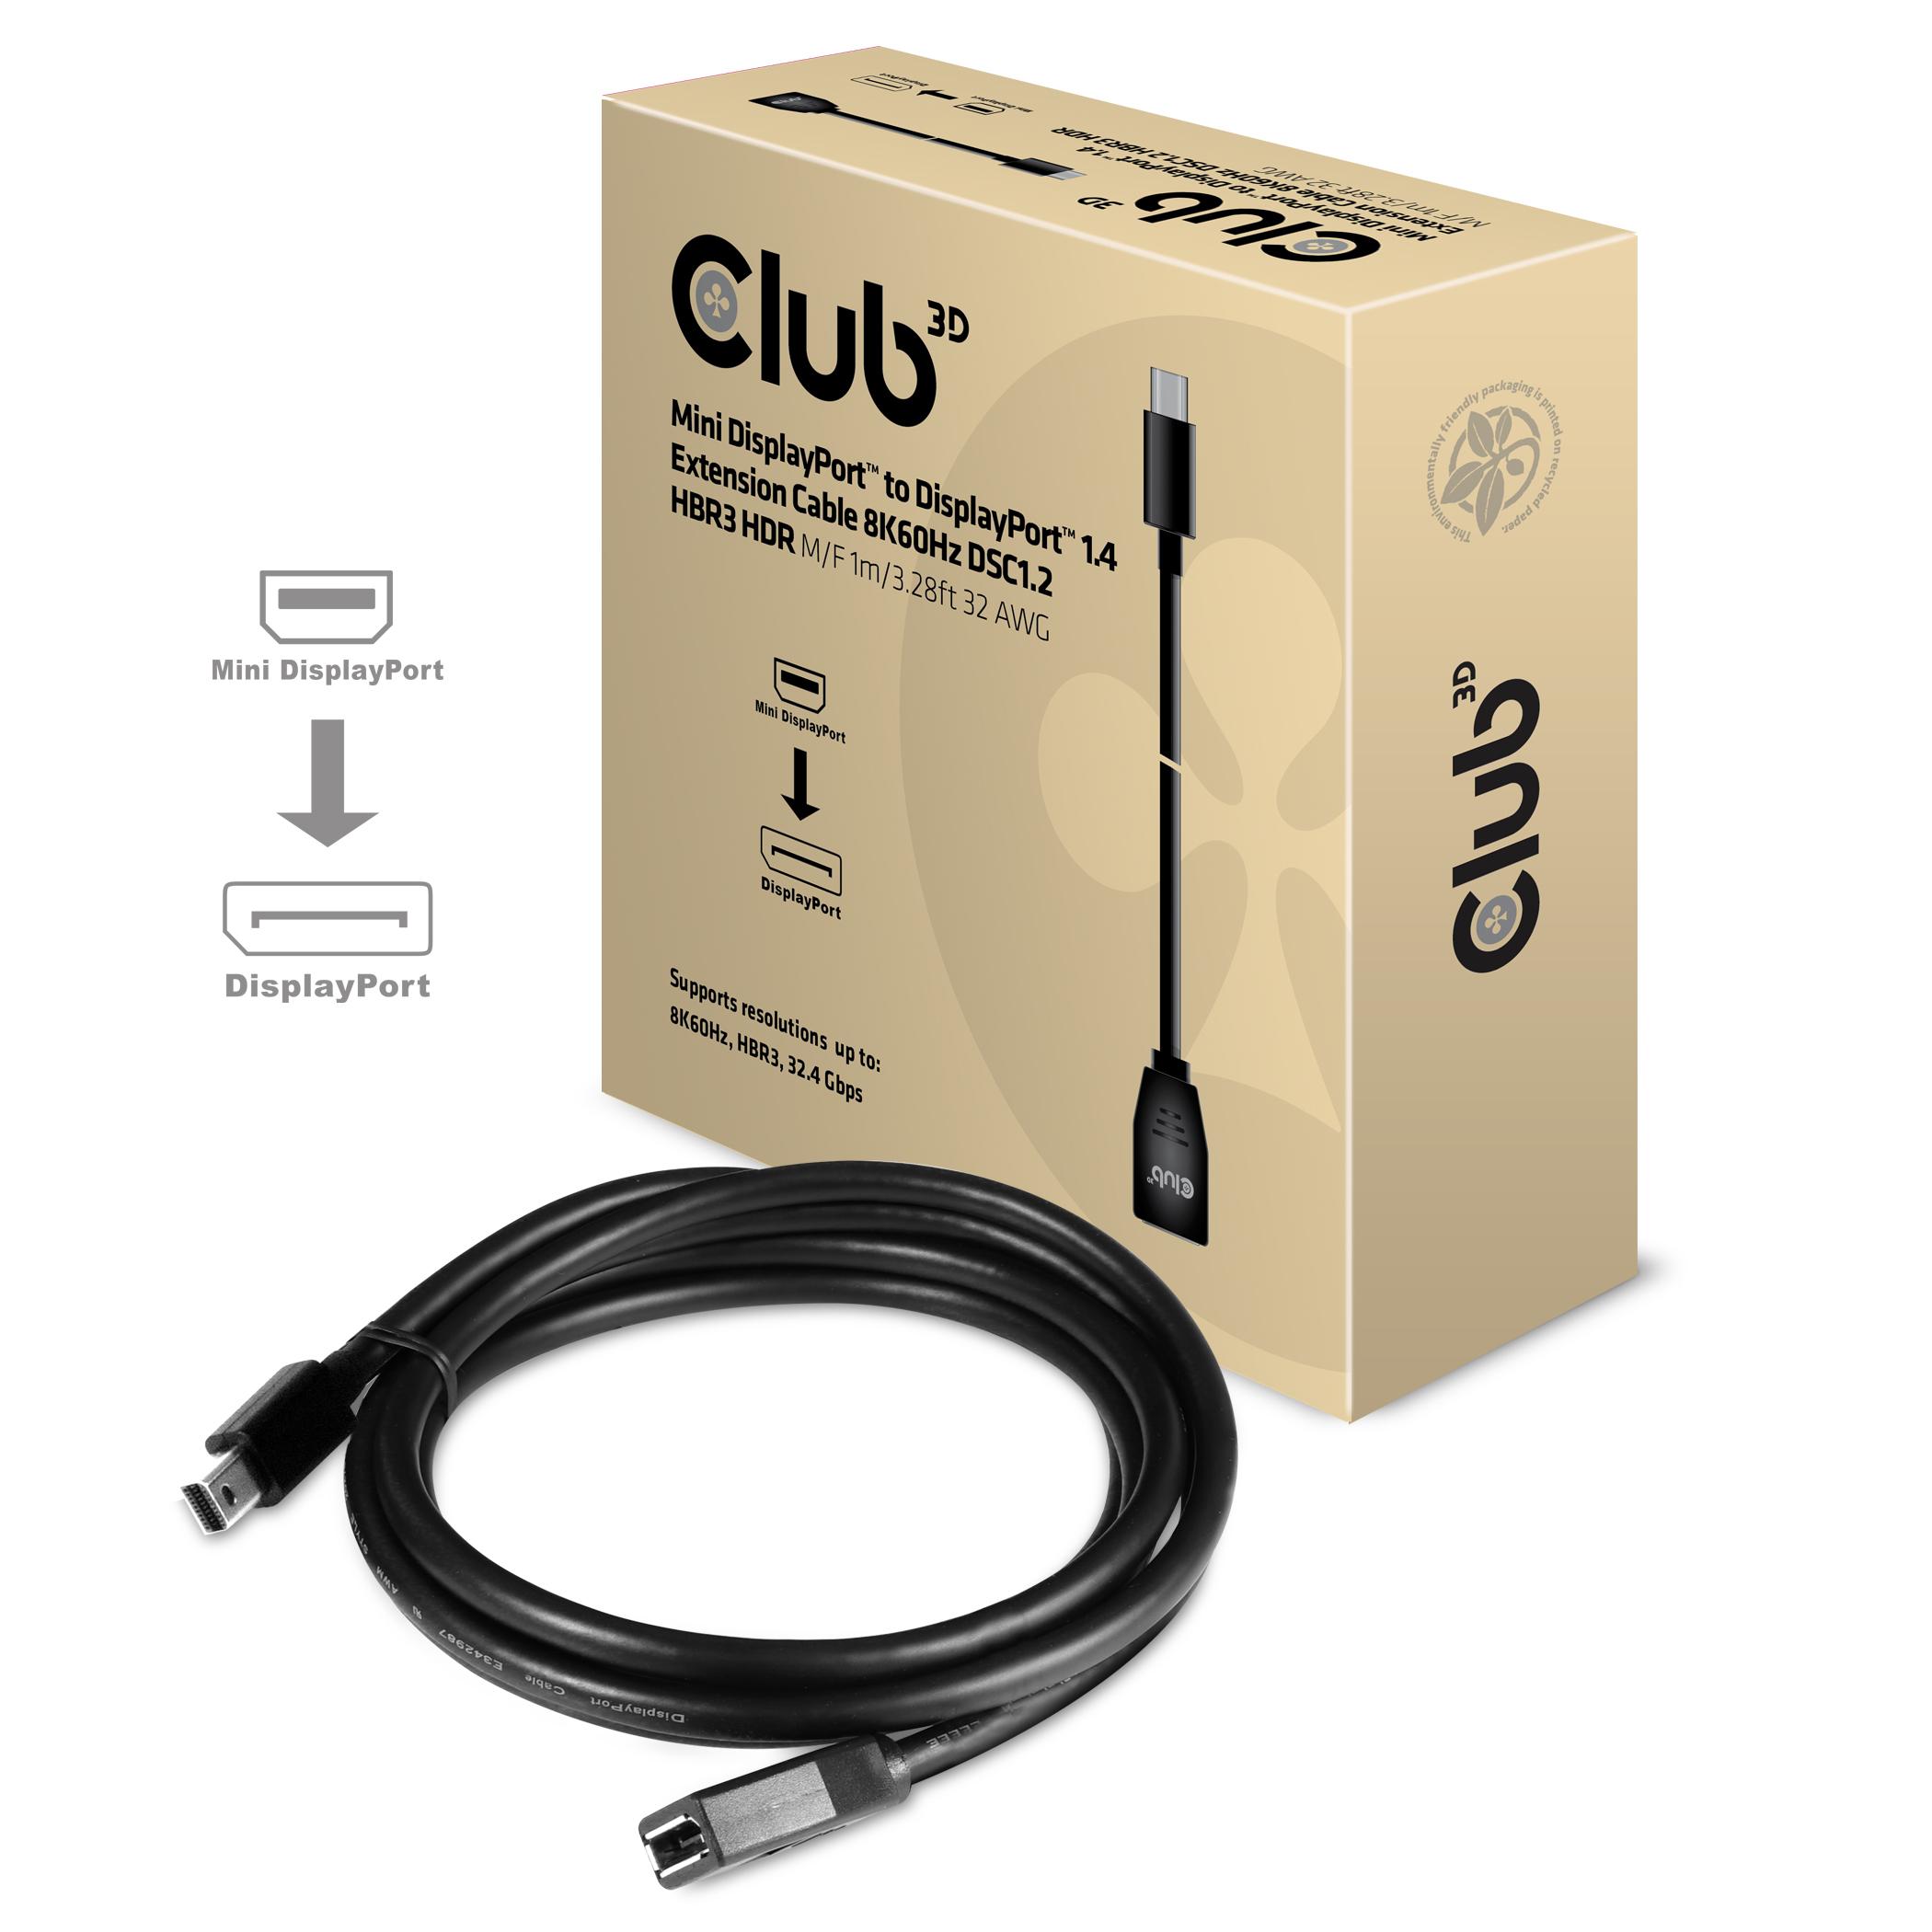 CLUB3D cac-1121 1 m Mini DisplayPort DisplayPort